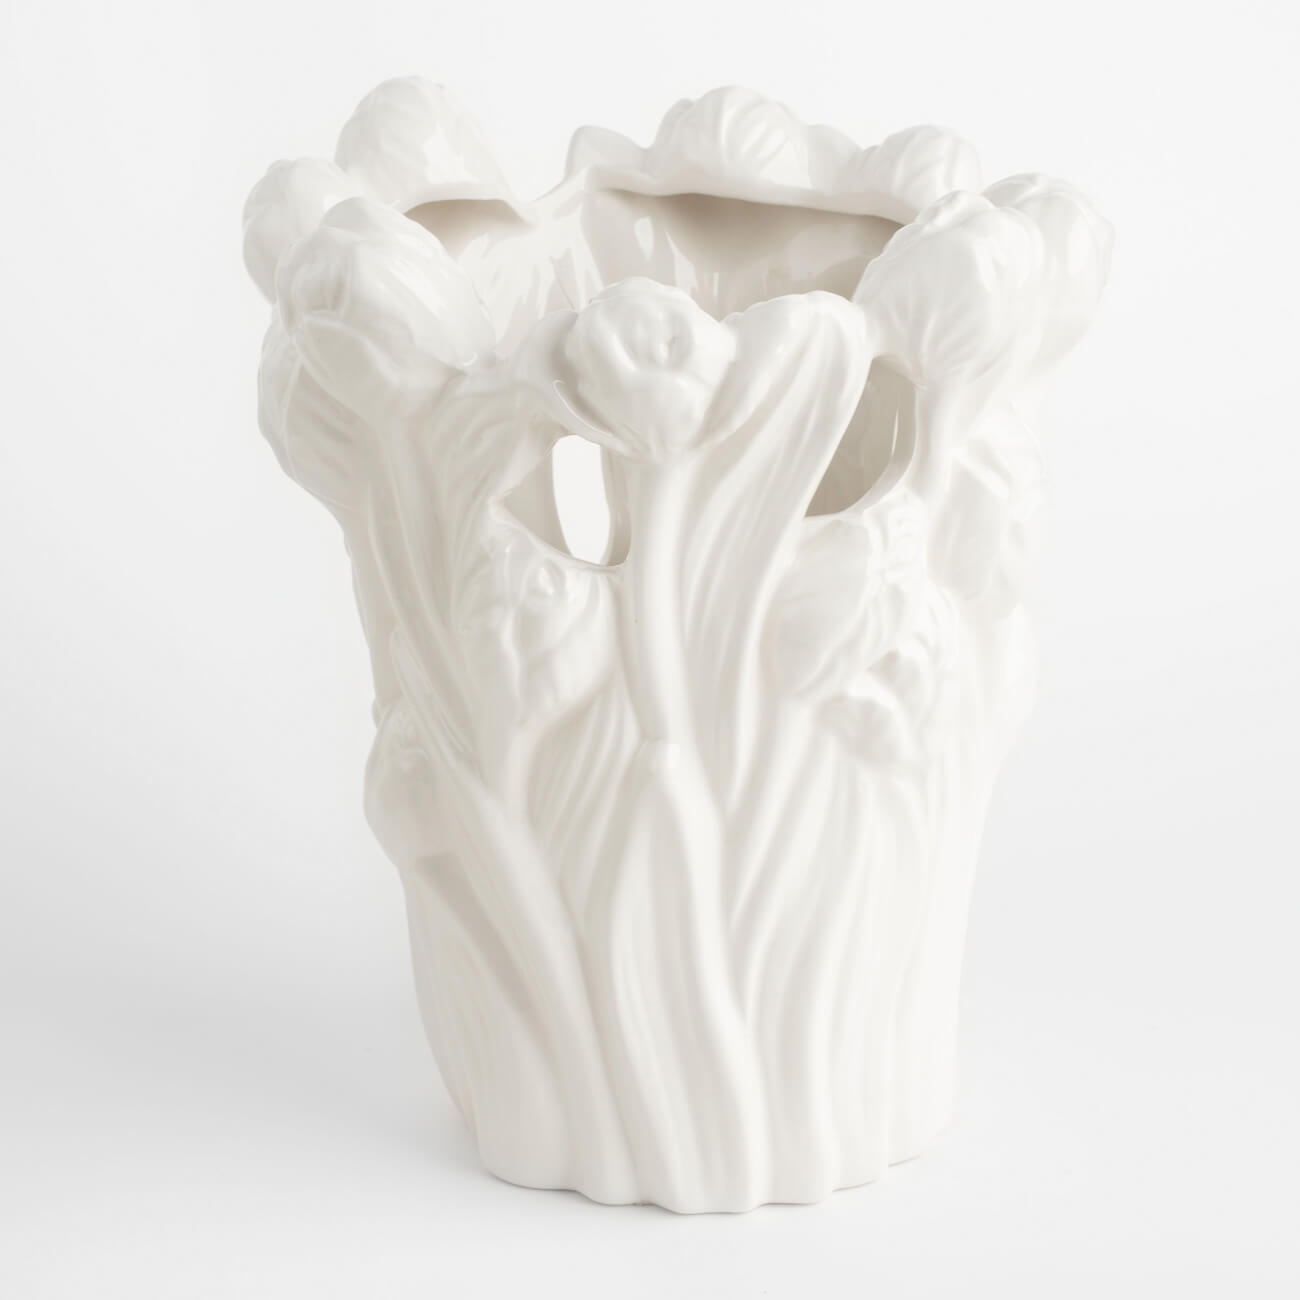 Ваза для цветов, 25 см, декоративная, керамика, белая, Тюльпаны, Tulip kuchenland ваза для цветов 26 см декоративная керамика белая лицо face